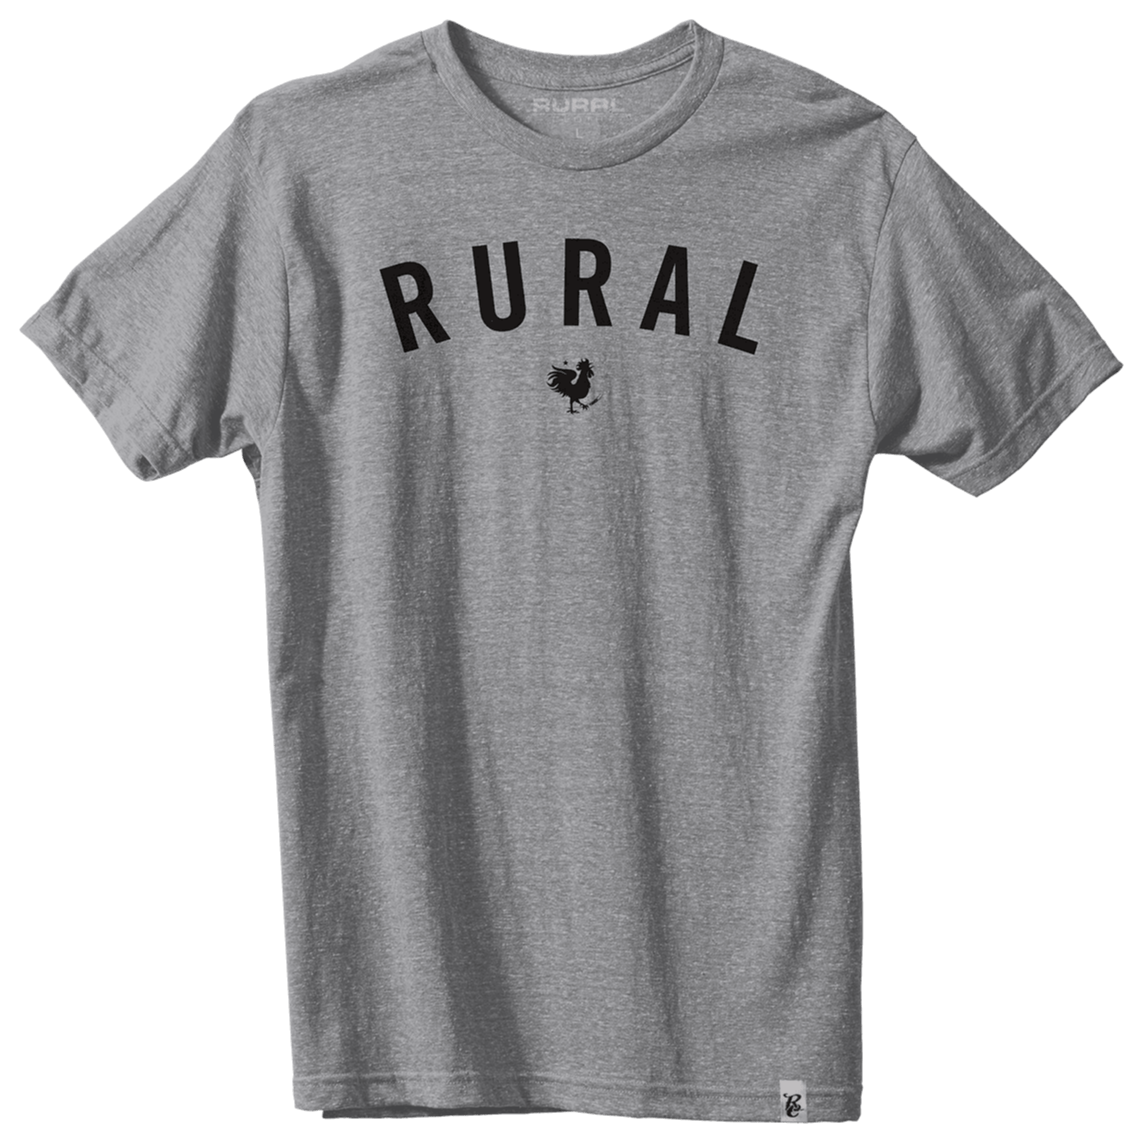 Rural Cloth Shirts Rural Tee